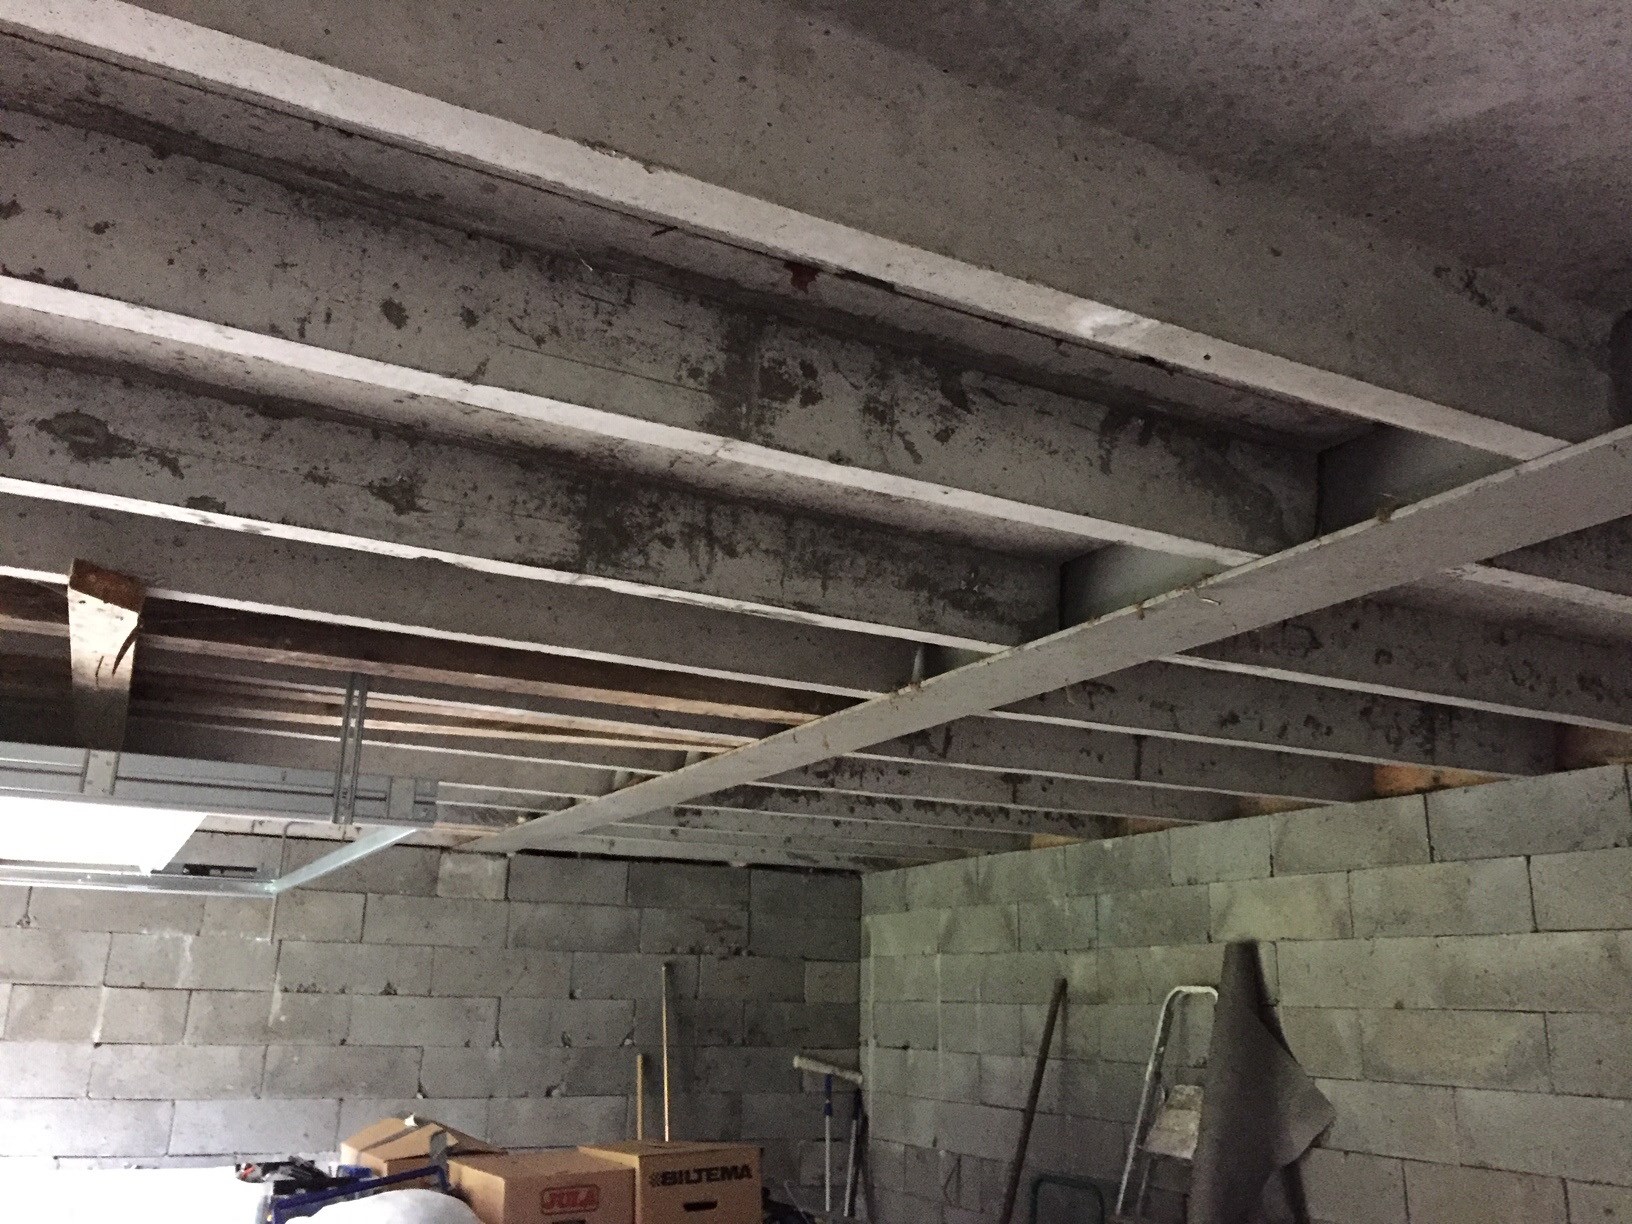 Prosjekt; Verksted/garasje fra bunnen av i eksisterende uthus ( Leca/betong) - innhenting og deling av erfaringer - Tak + østvegg.JPG - Harraball